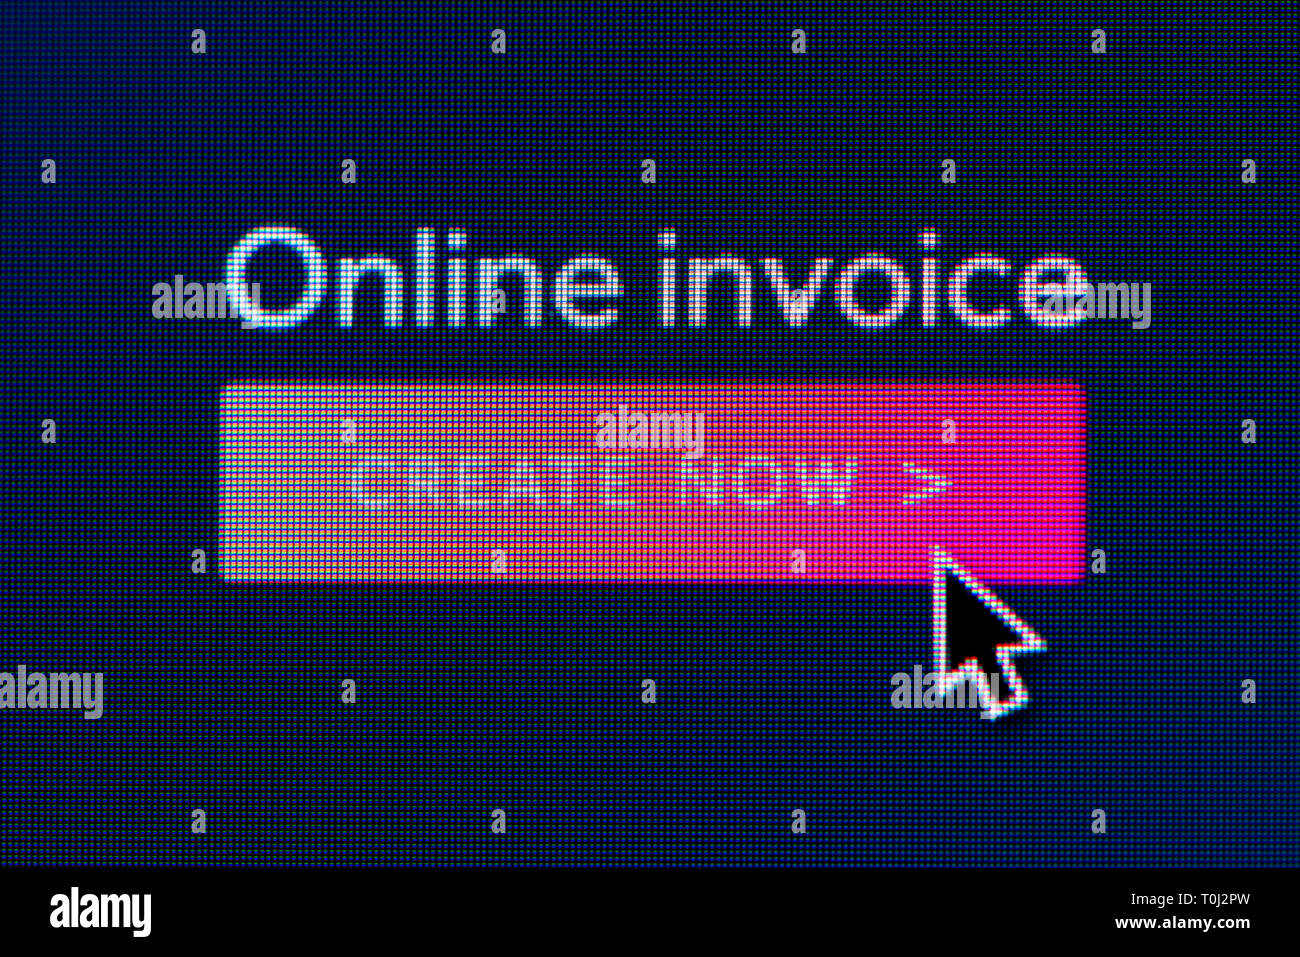 L'invite pour créer une facture en ligne est visible sur l'écran d'un ordinateur avec une souris (curseur utilisation éditoriale uniquement) Banque D'Images